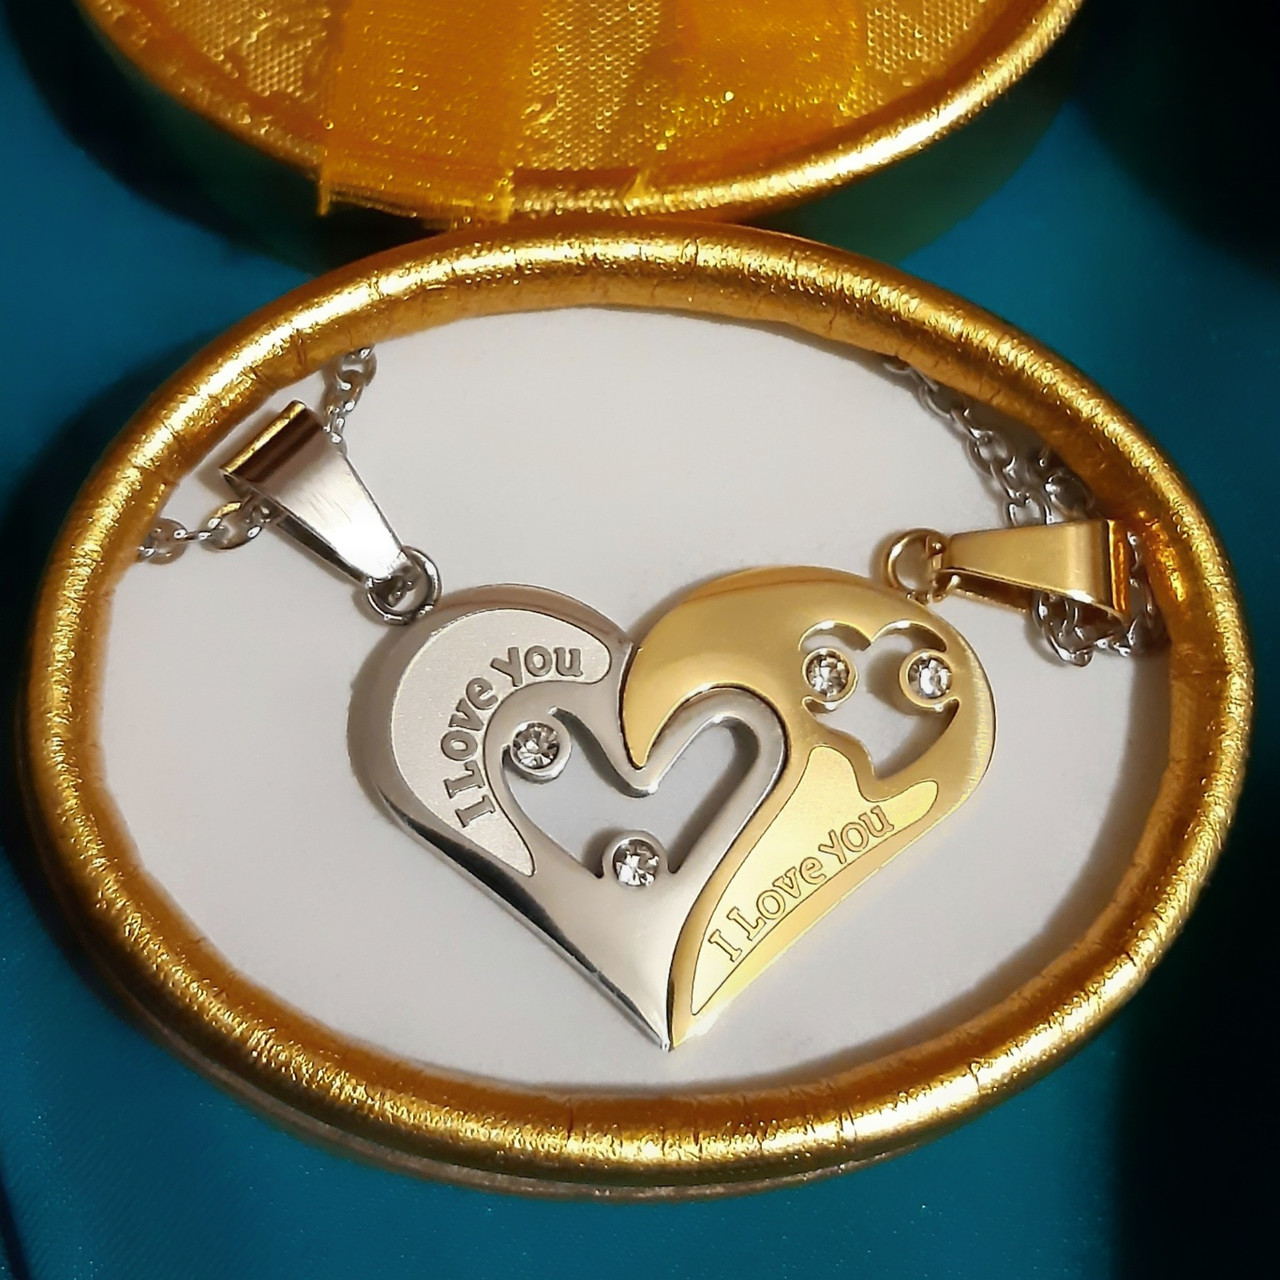 Парні кулони "Одне серце на двох" сталь і медзолото - оригінальний подарунок хлопцю дівчині у стильній коробочці